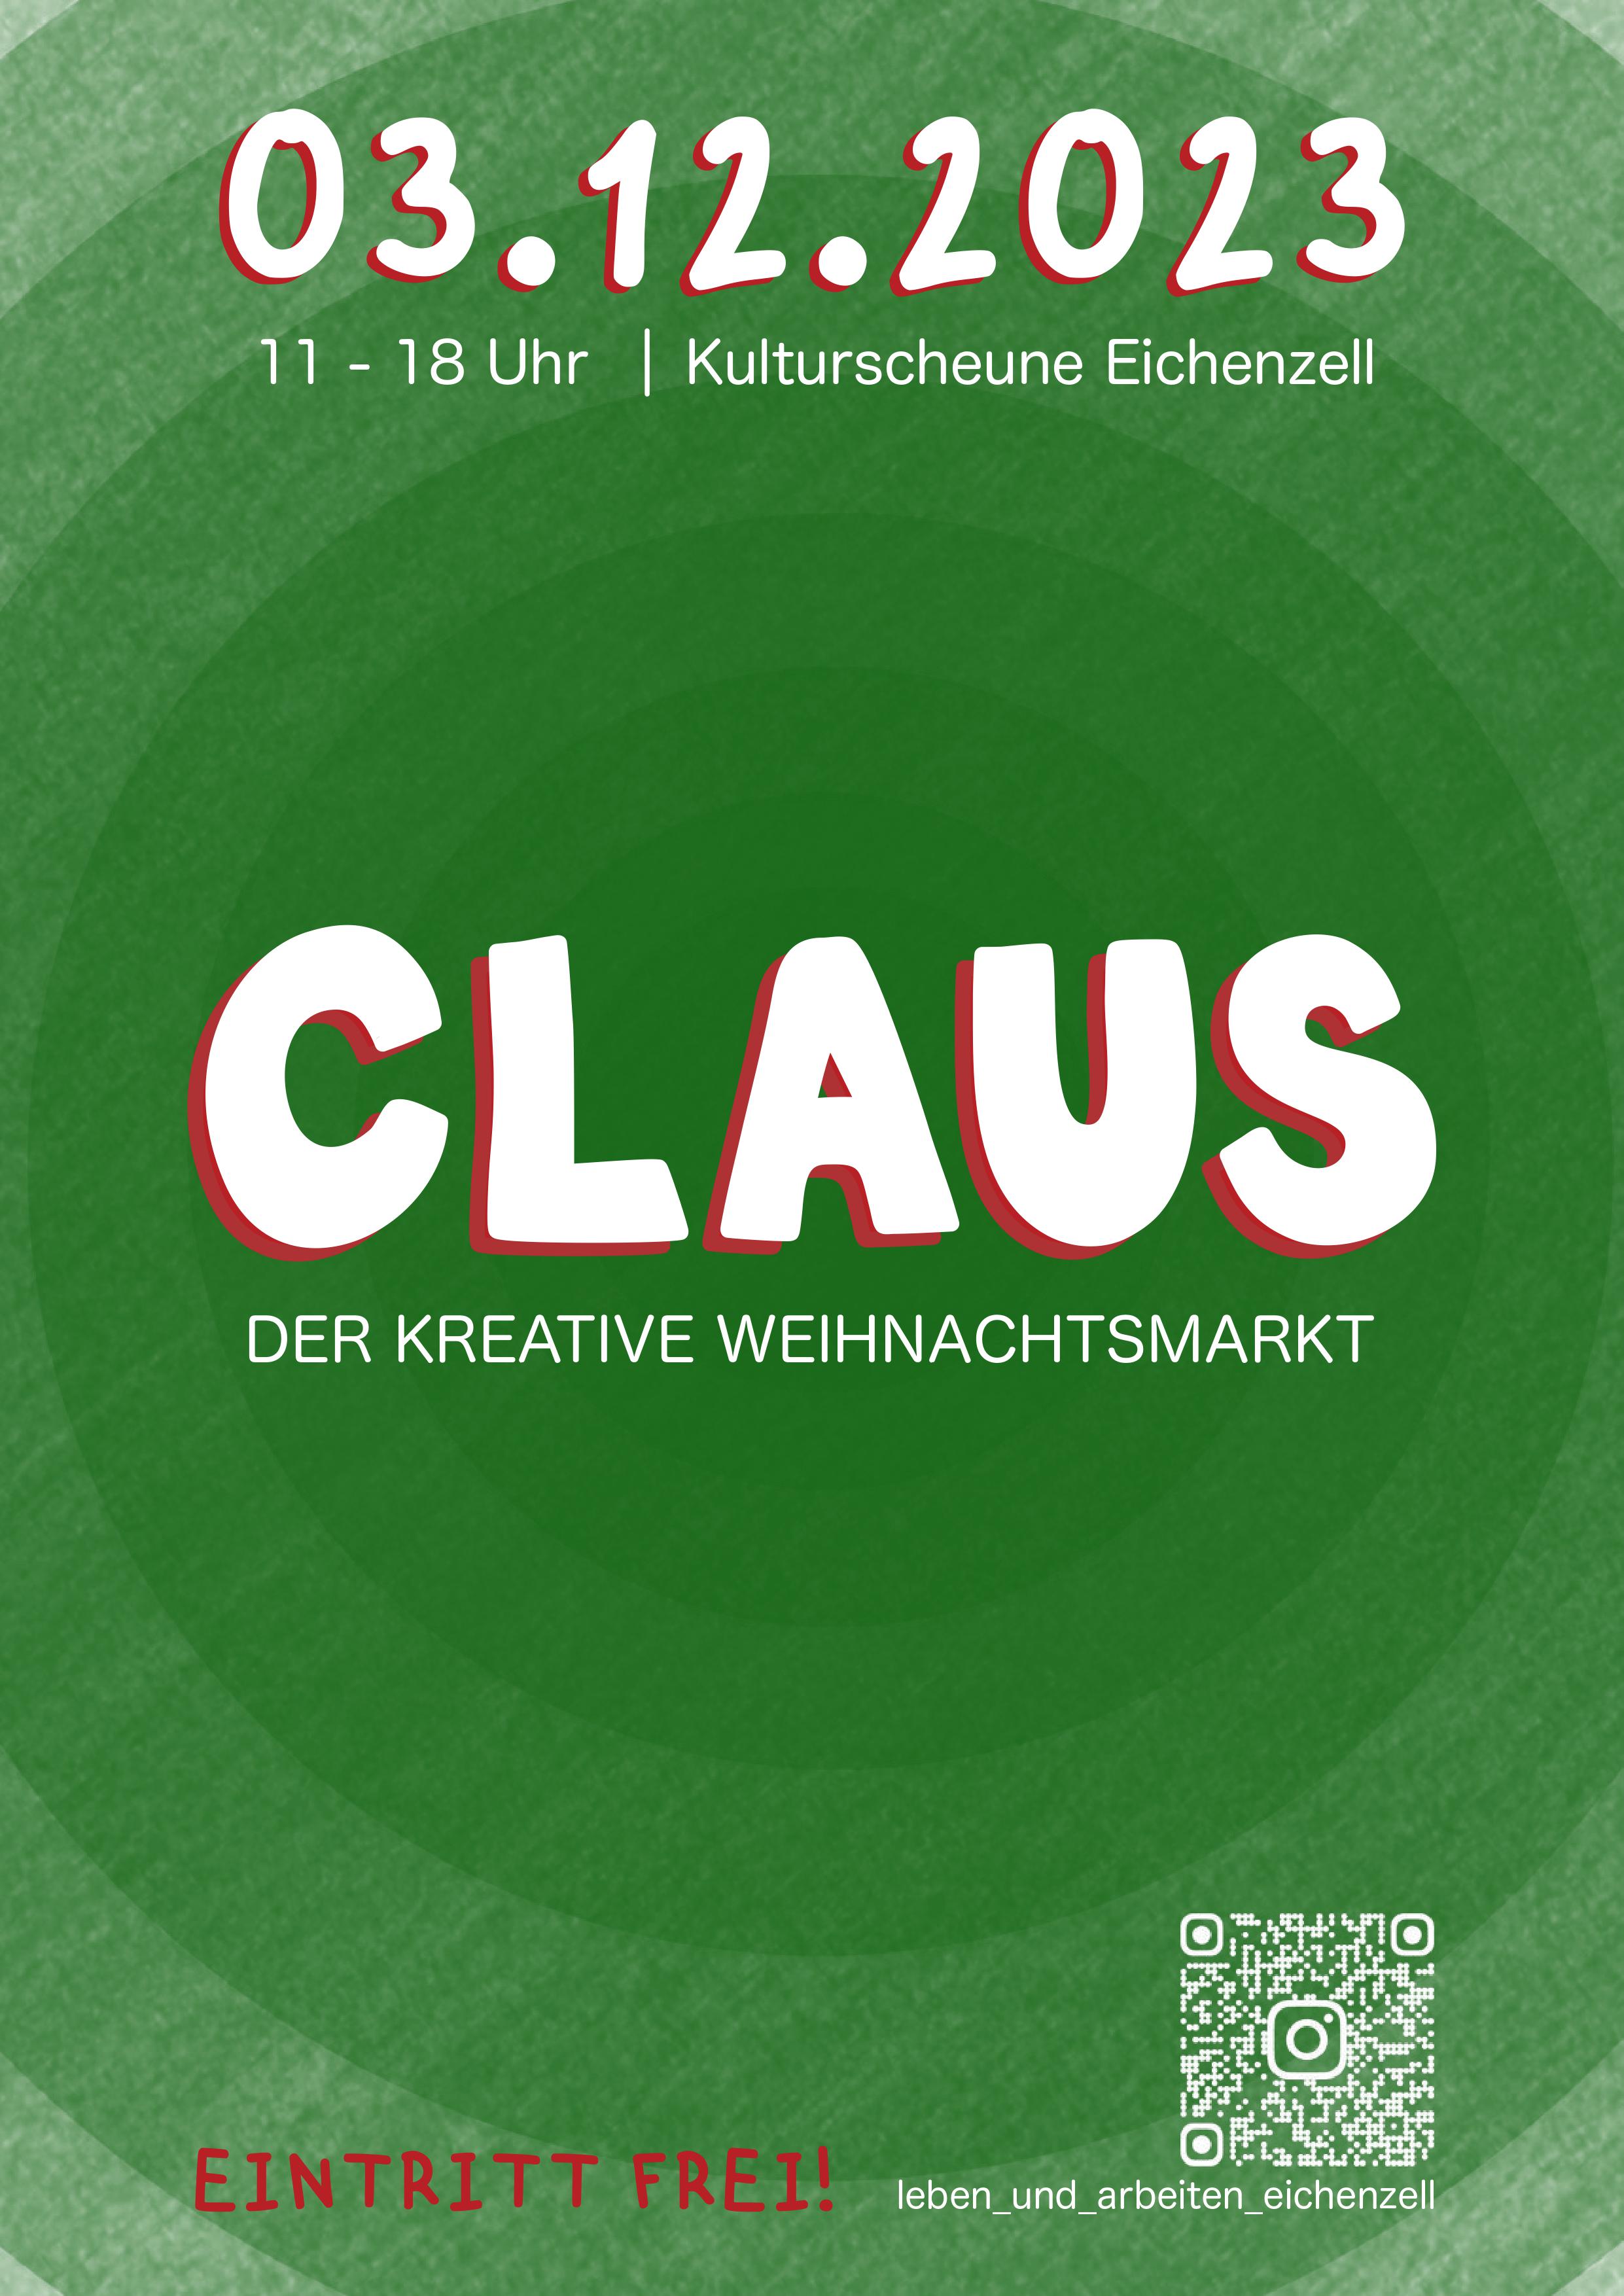 Claus - Der kreative Weihnachtsmarkt Bild 1